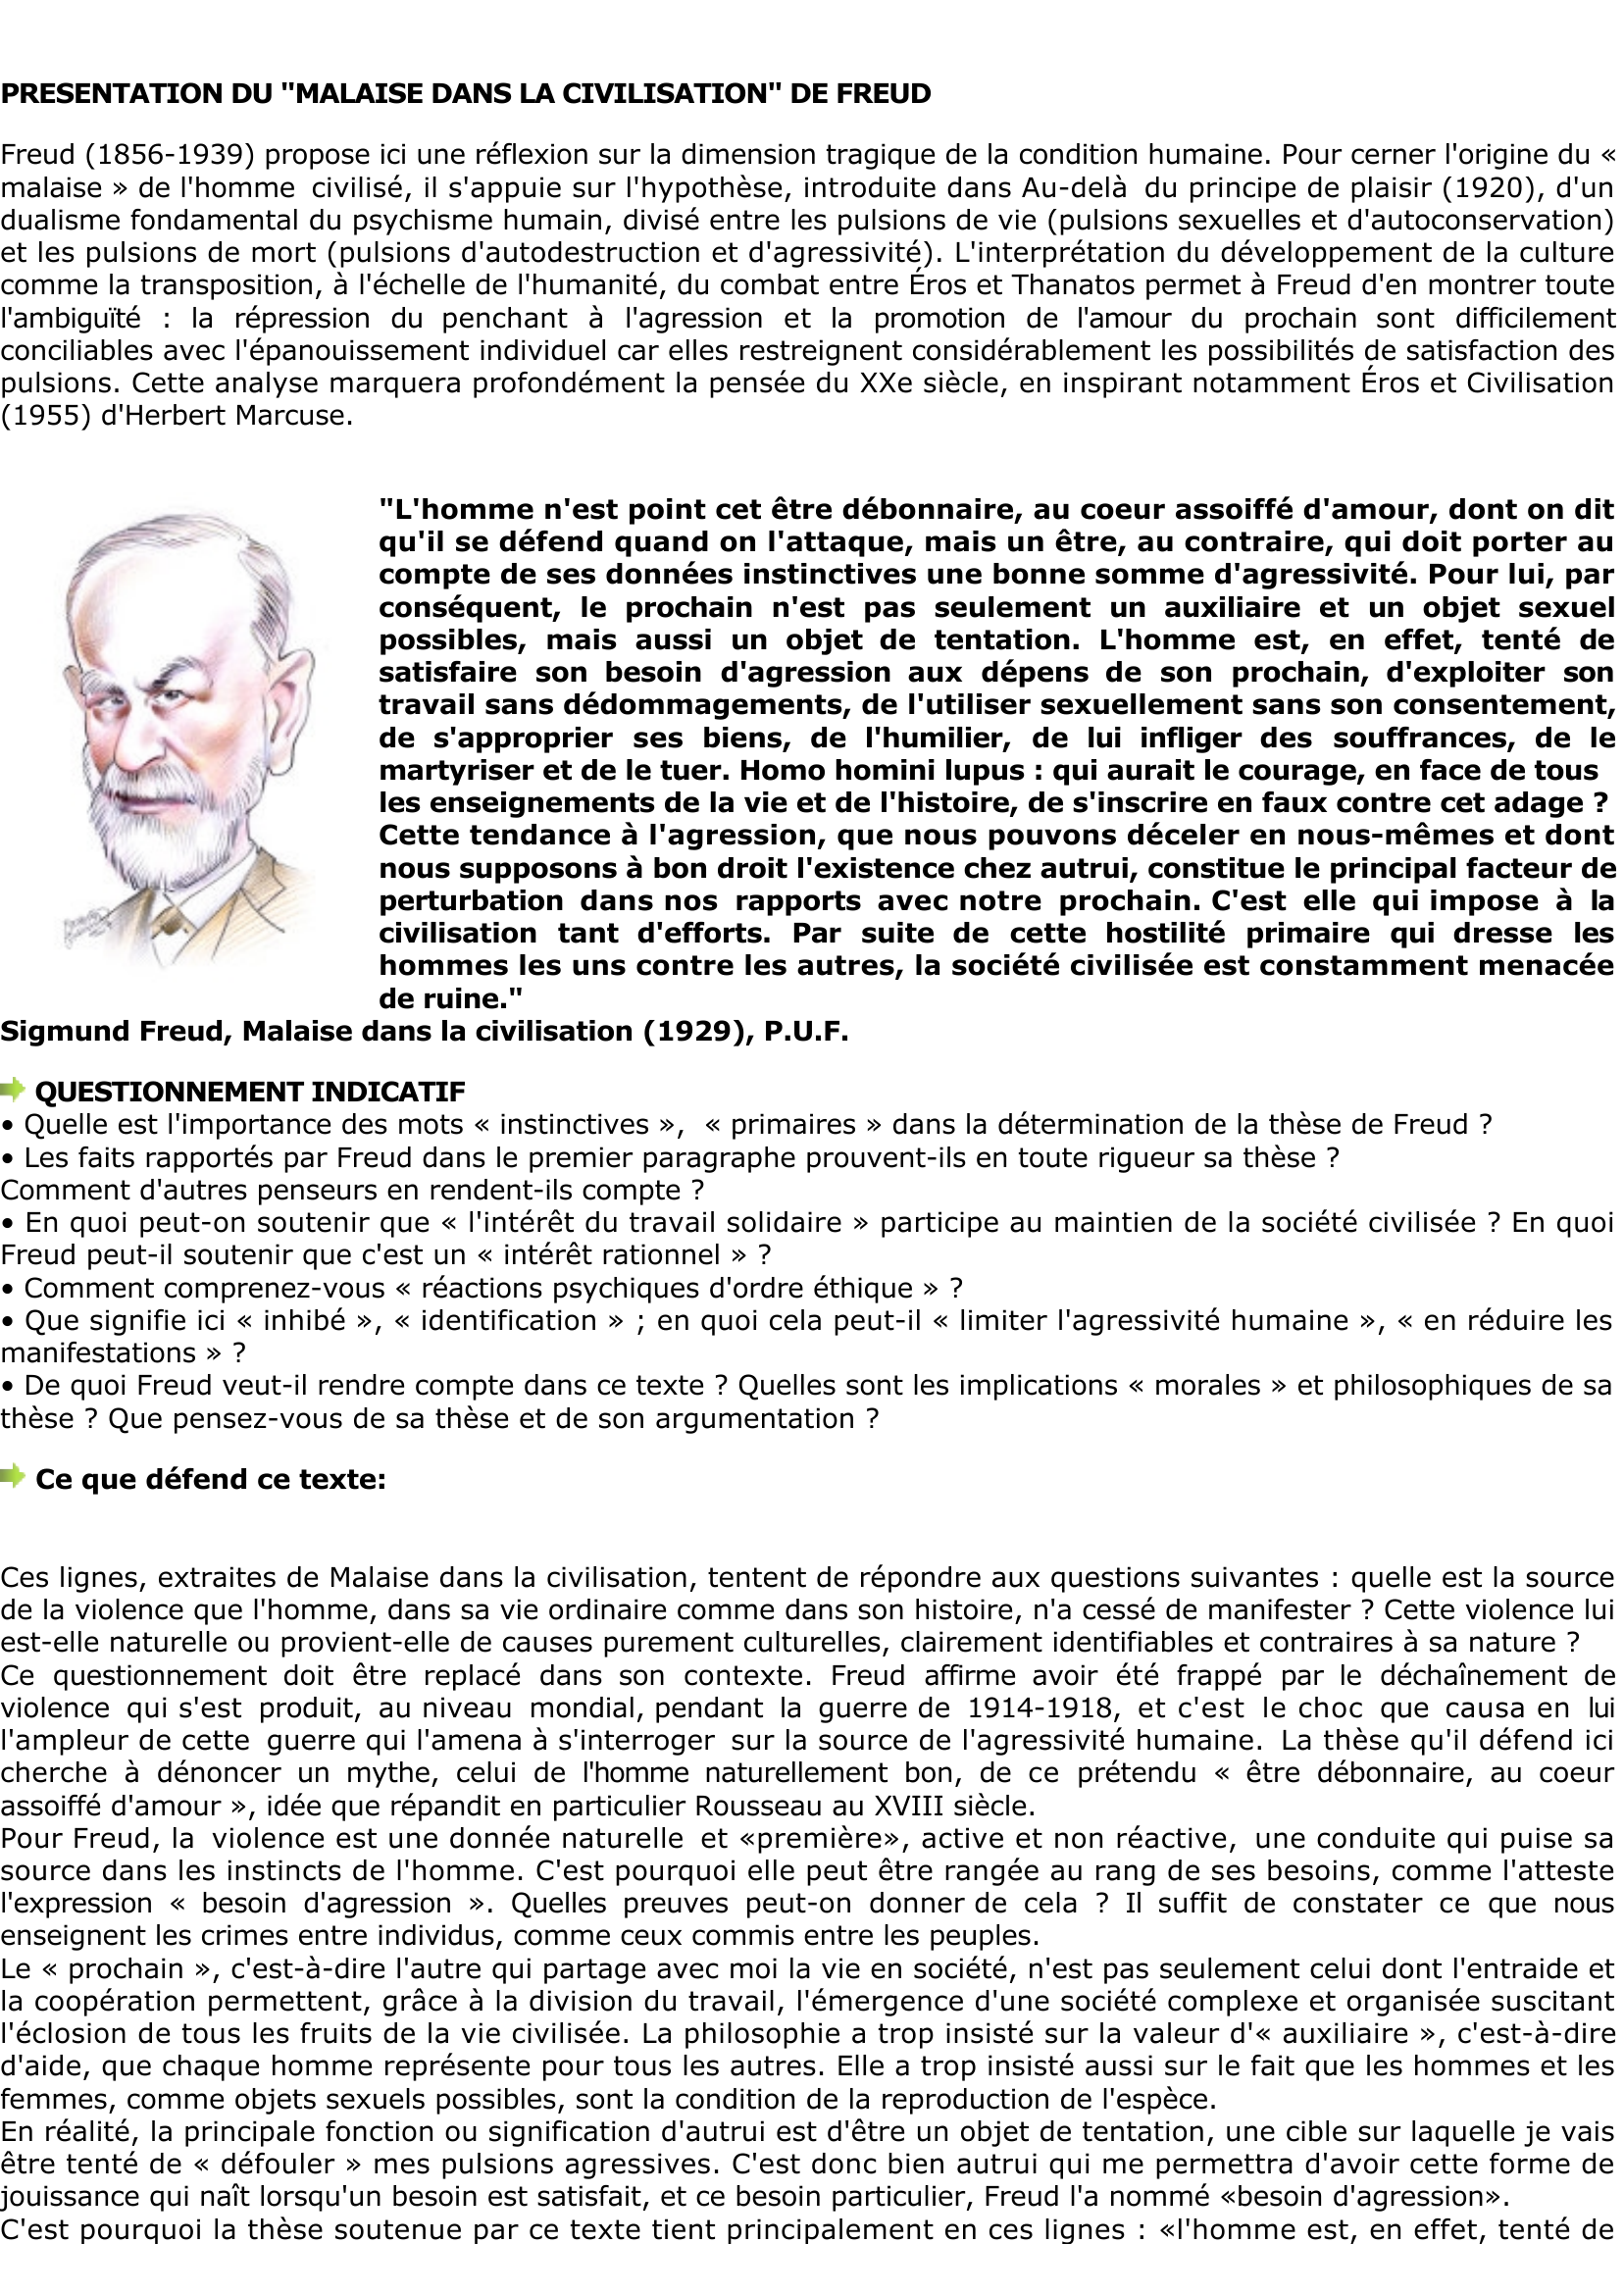 Prévisualisation du document Sigmund Freud: L'homme est-il 

naturellement violent ?